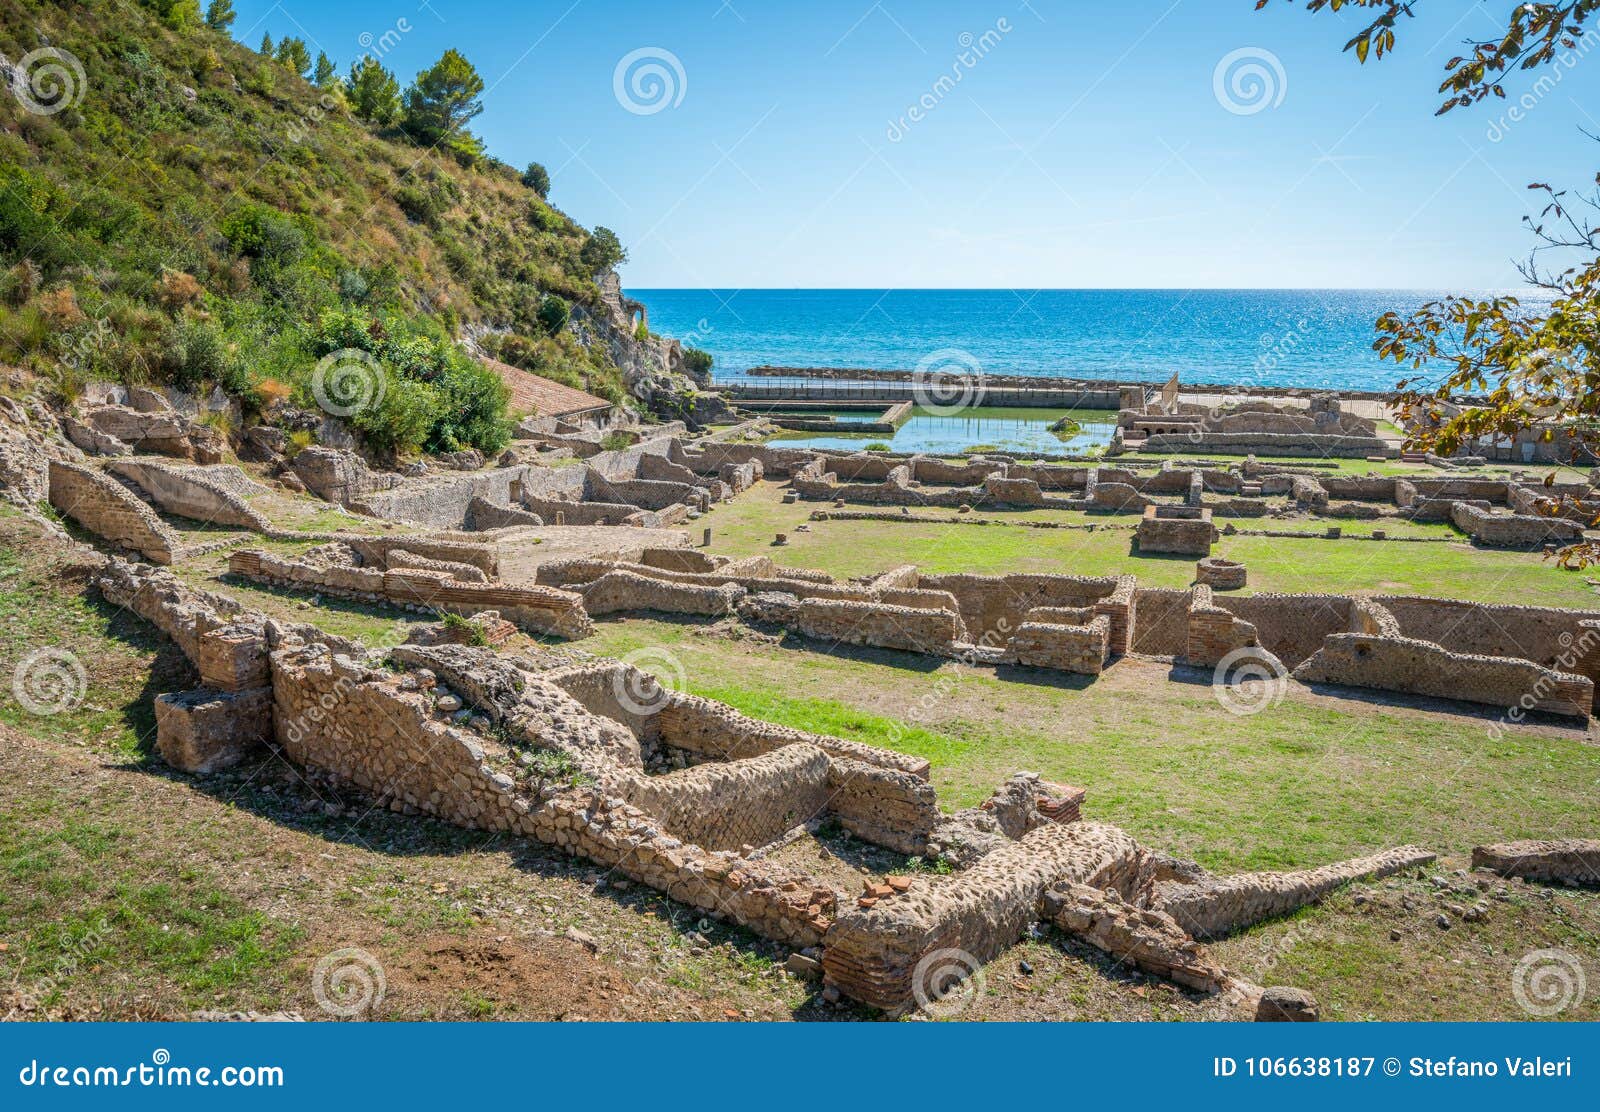 tiberio`s villa, roman ruins near sperlonga, latina province, lazio, central italy.